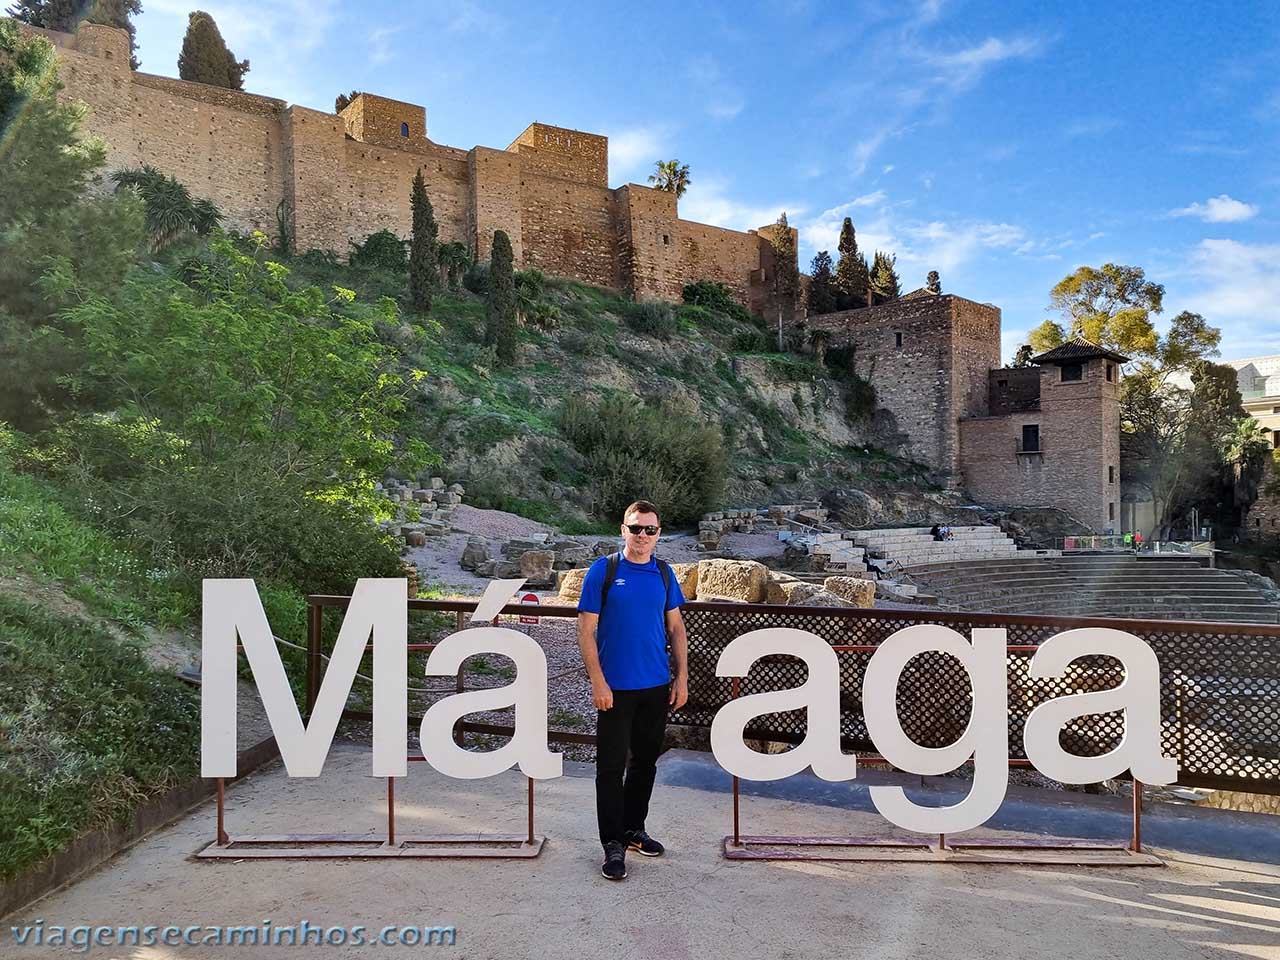 Málaga, Espanha: 23 pontos turísticos - Viagens e Caminhos